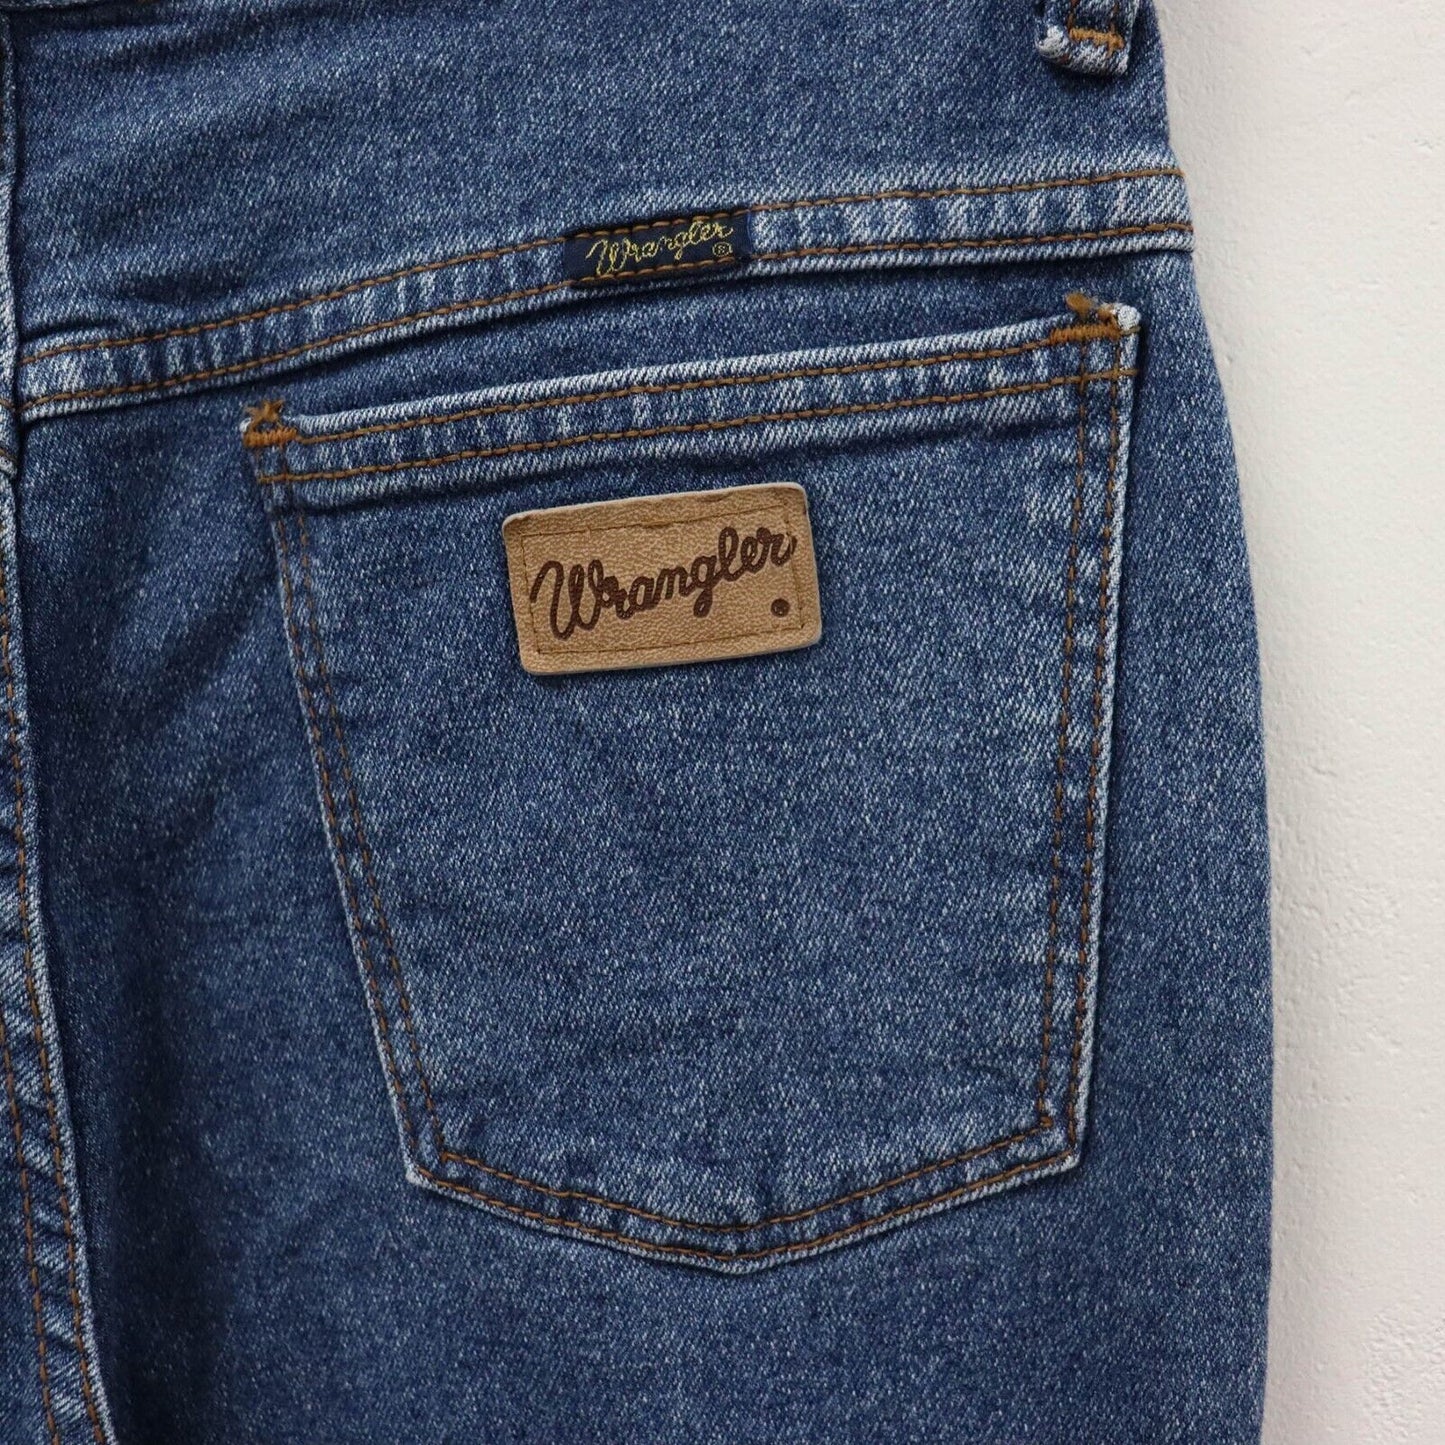 Vintage Wrangler High Waist Taper Jeans Size UK10 L33